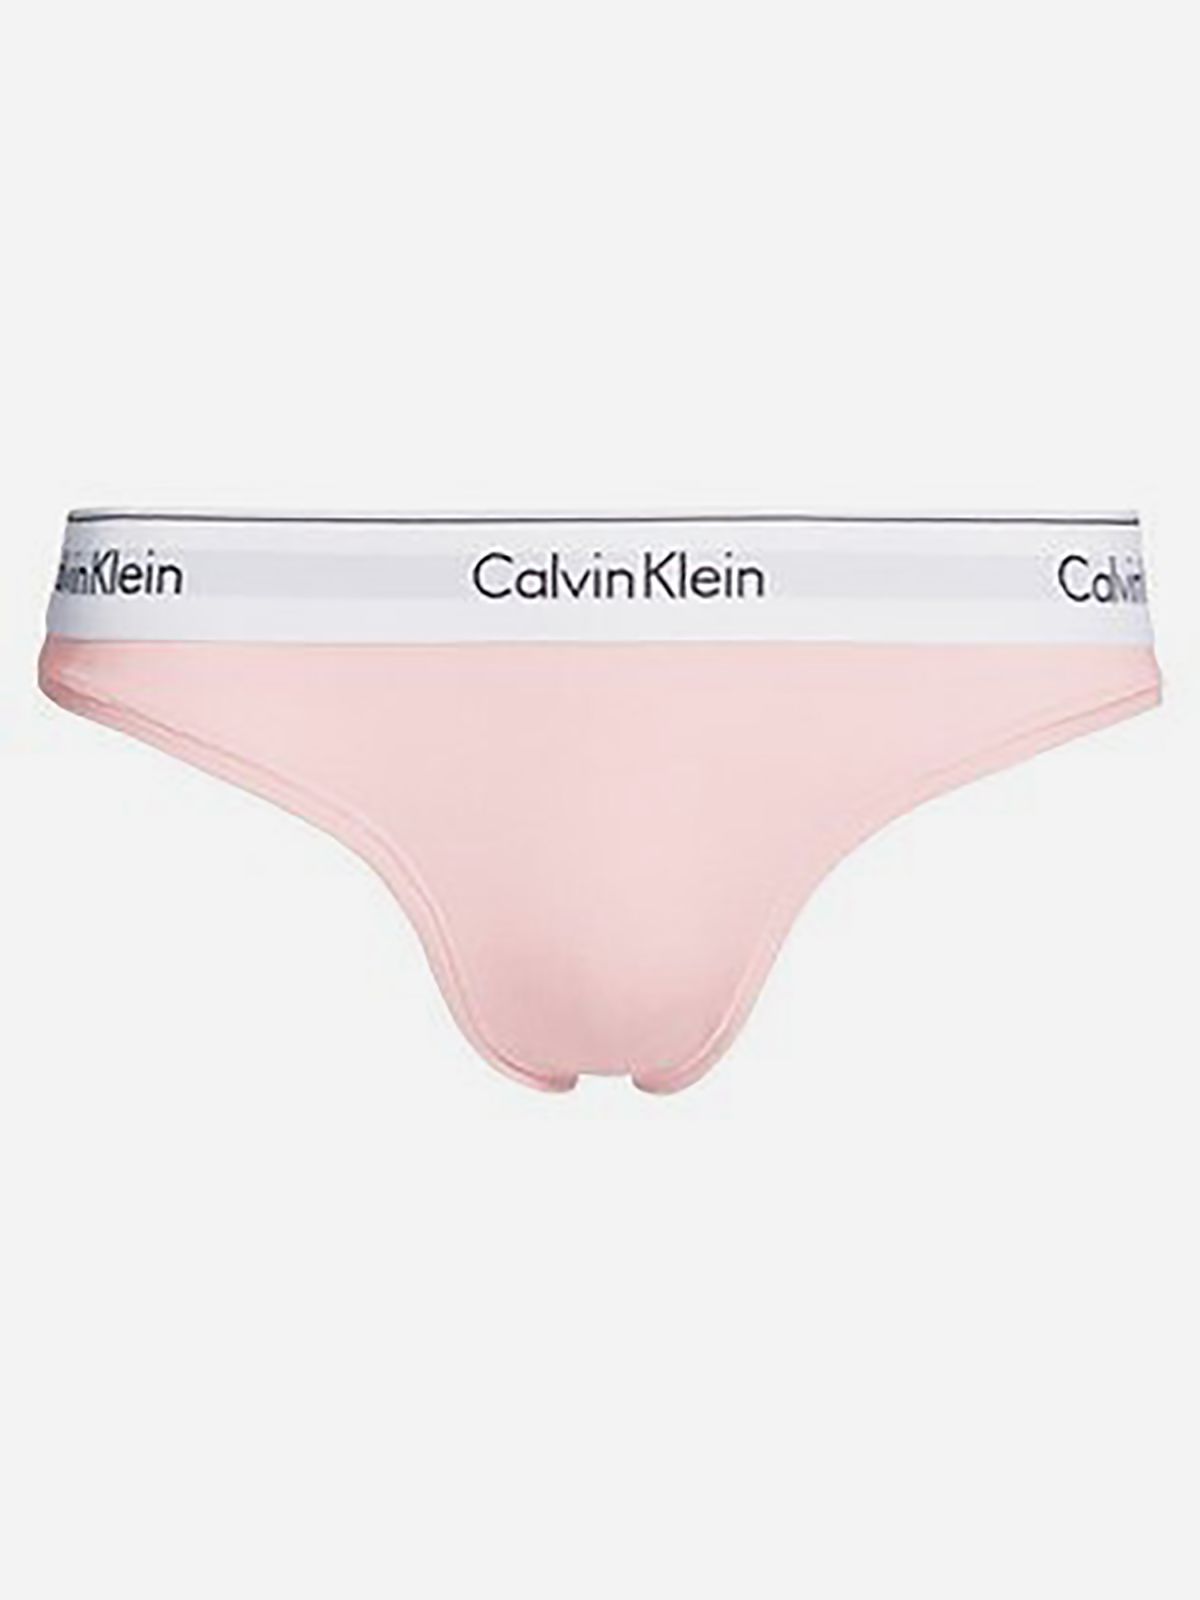  תחתוני חוטיני עם לוגו רץ / נשים של CALVIN KLEIN